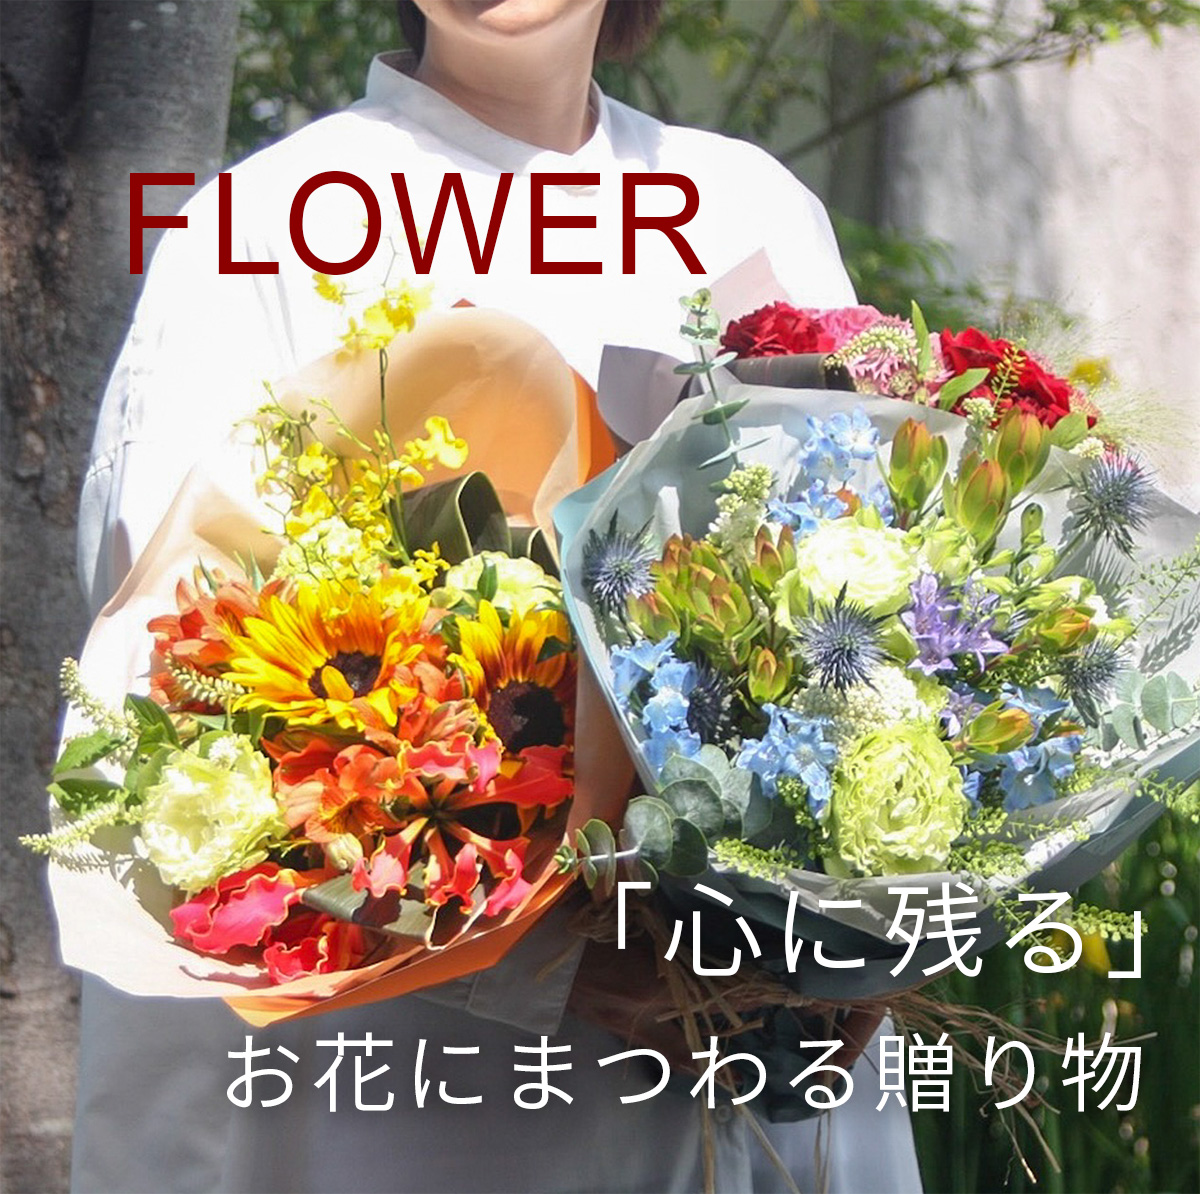 FLOWER 「心に残る」お花にまつわる贈り物